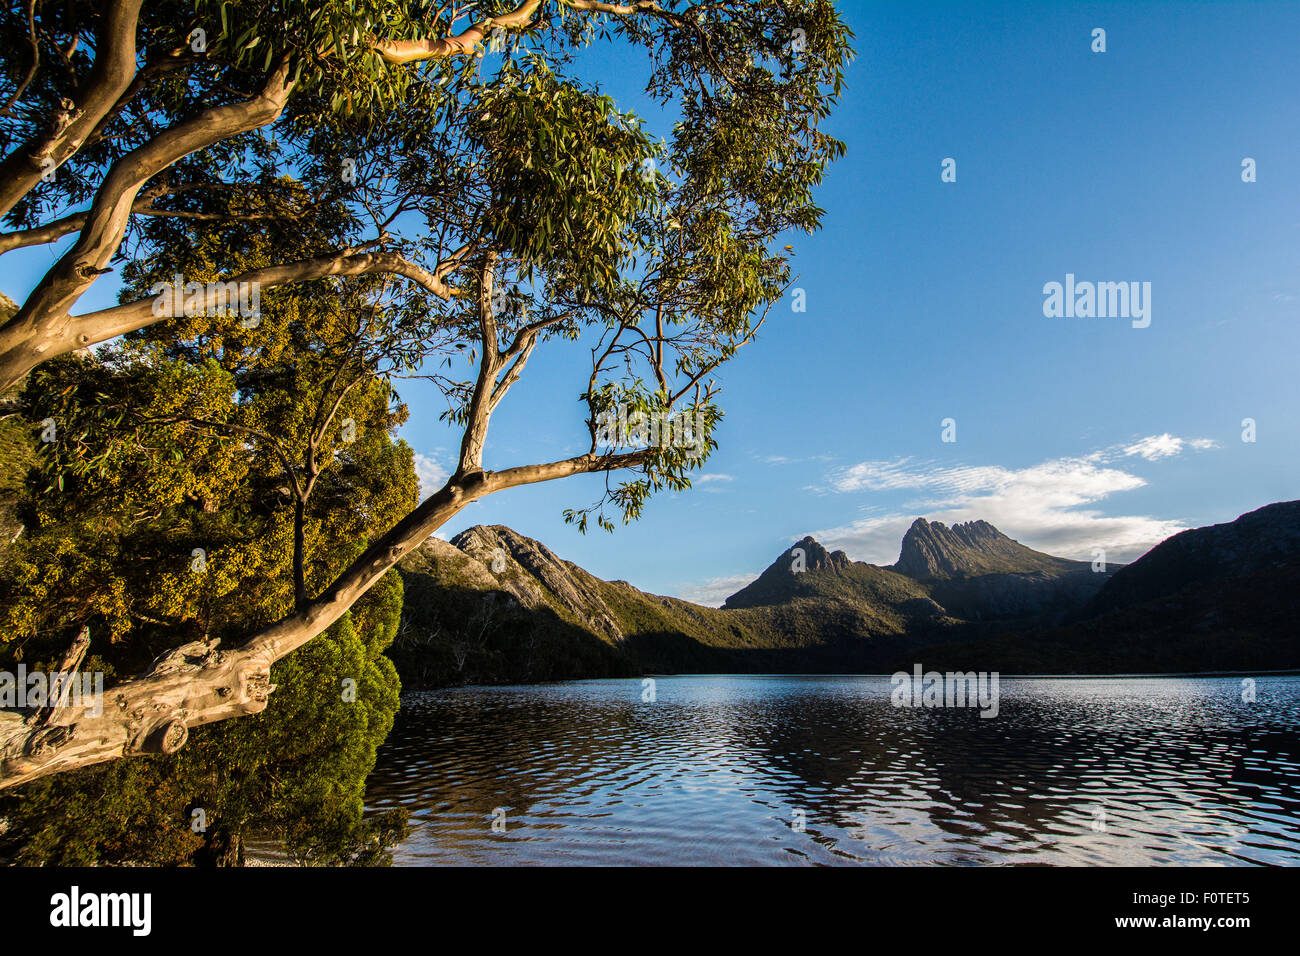 Cradle Mountain & Dove Lake, Cradle Mountain-Lake St. Clair National Park, Tasmania Stock Photo